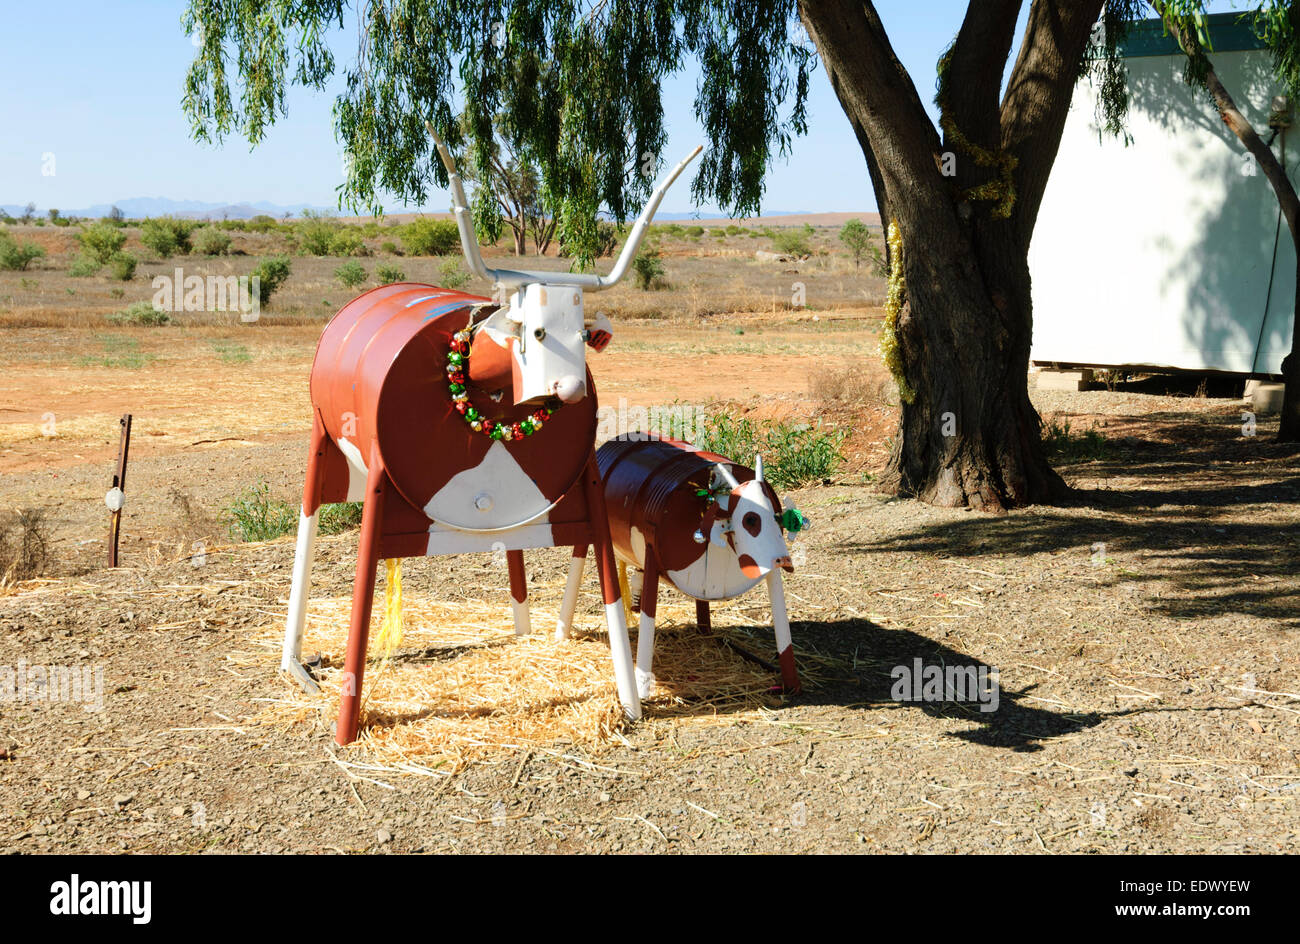 Humorous Animal Art, South Australia Stock Photo